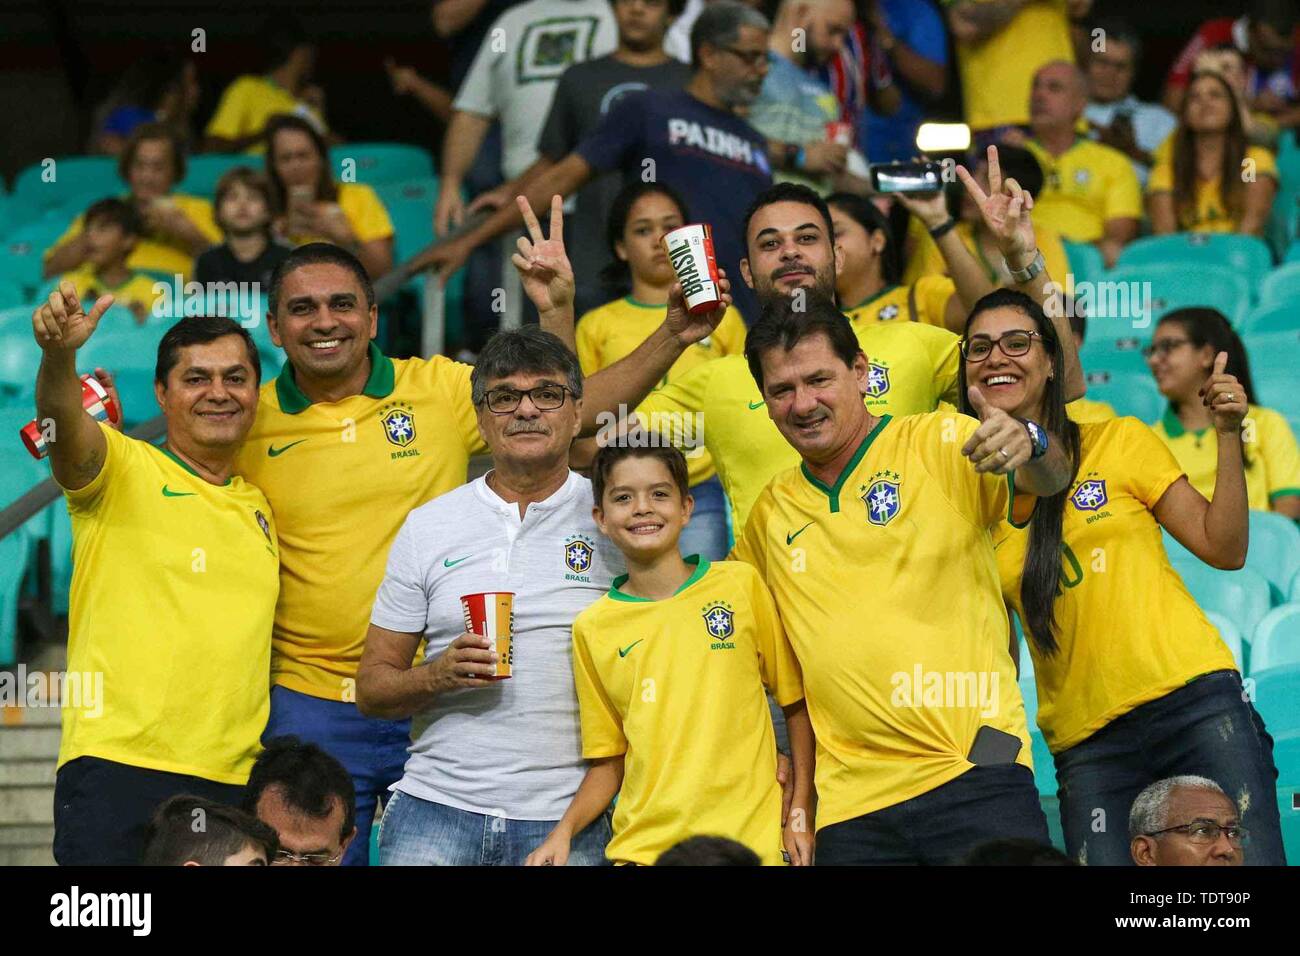 Copa América: próximo jogo do Brasil pode ser primeiro com arena